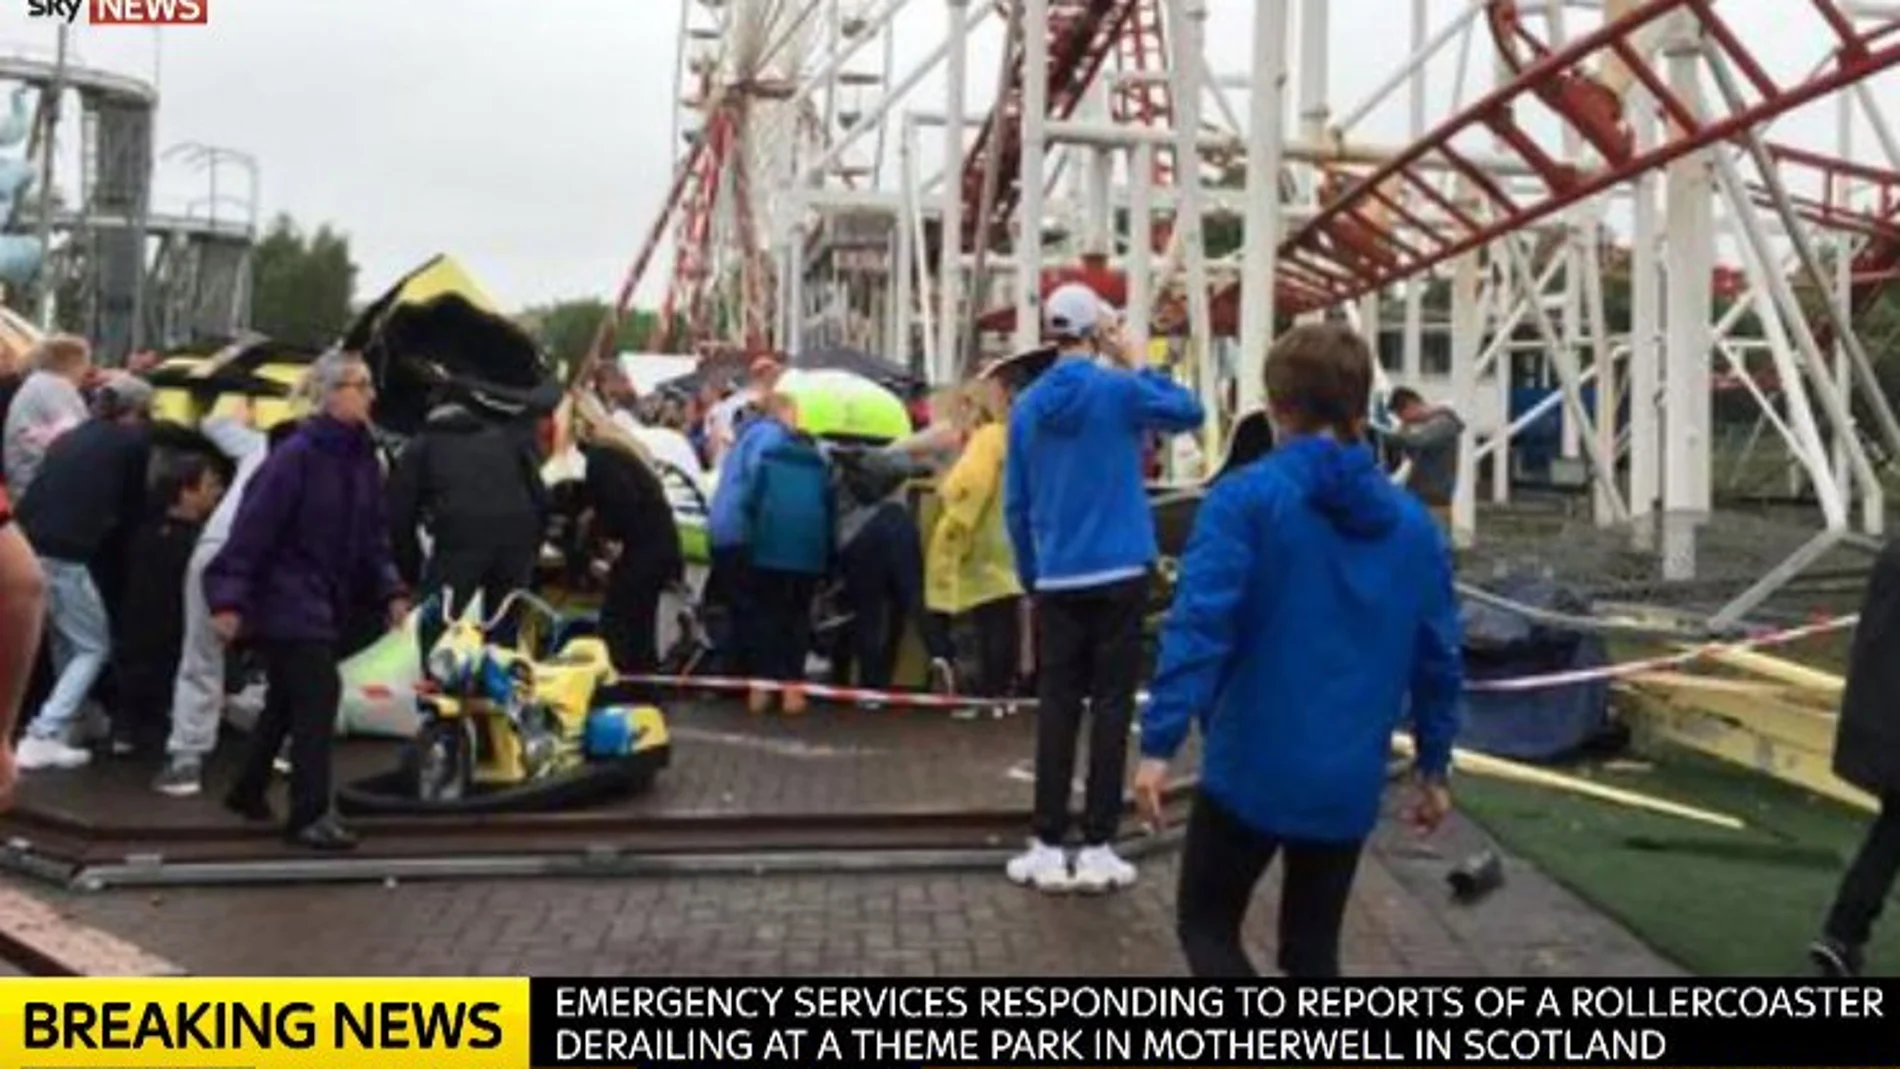 Imagen del accidente publicada por Sky News